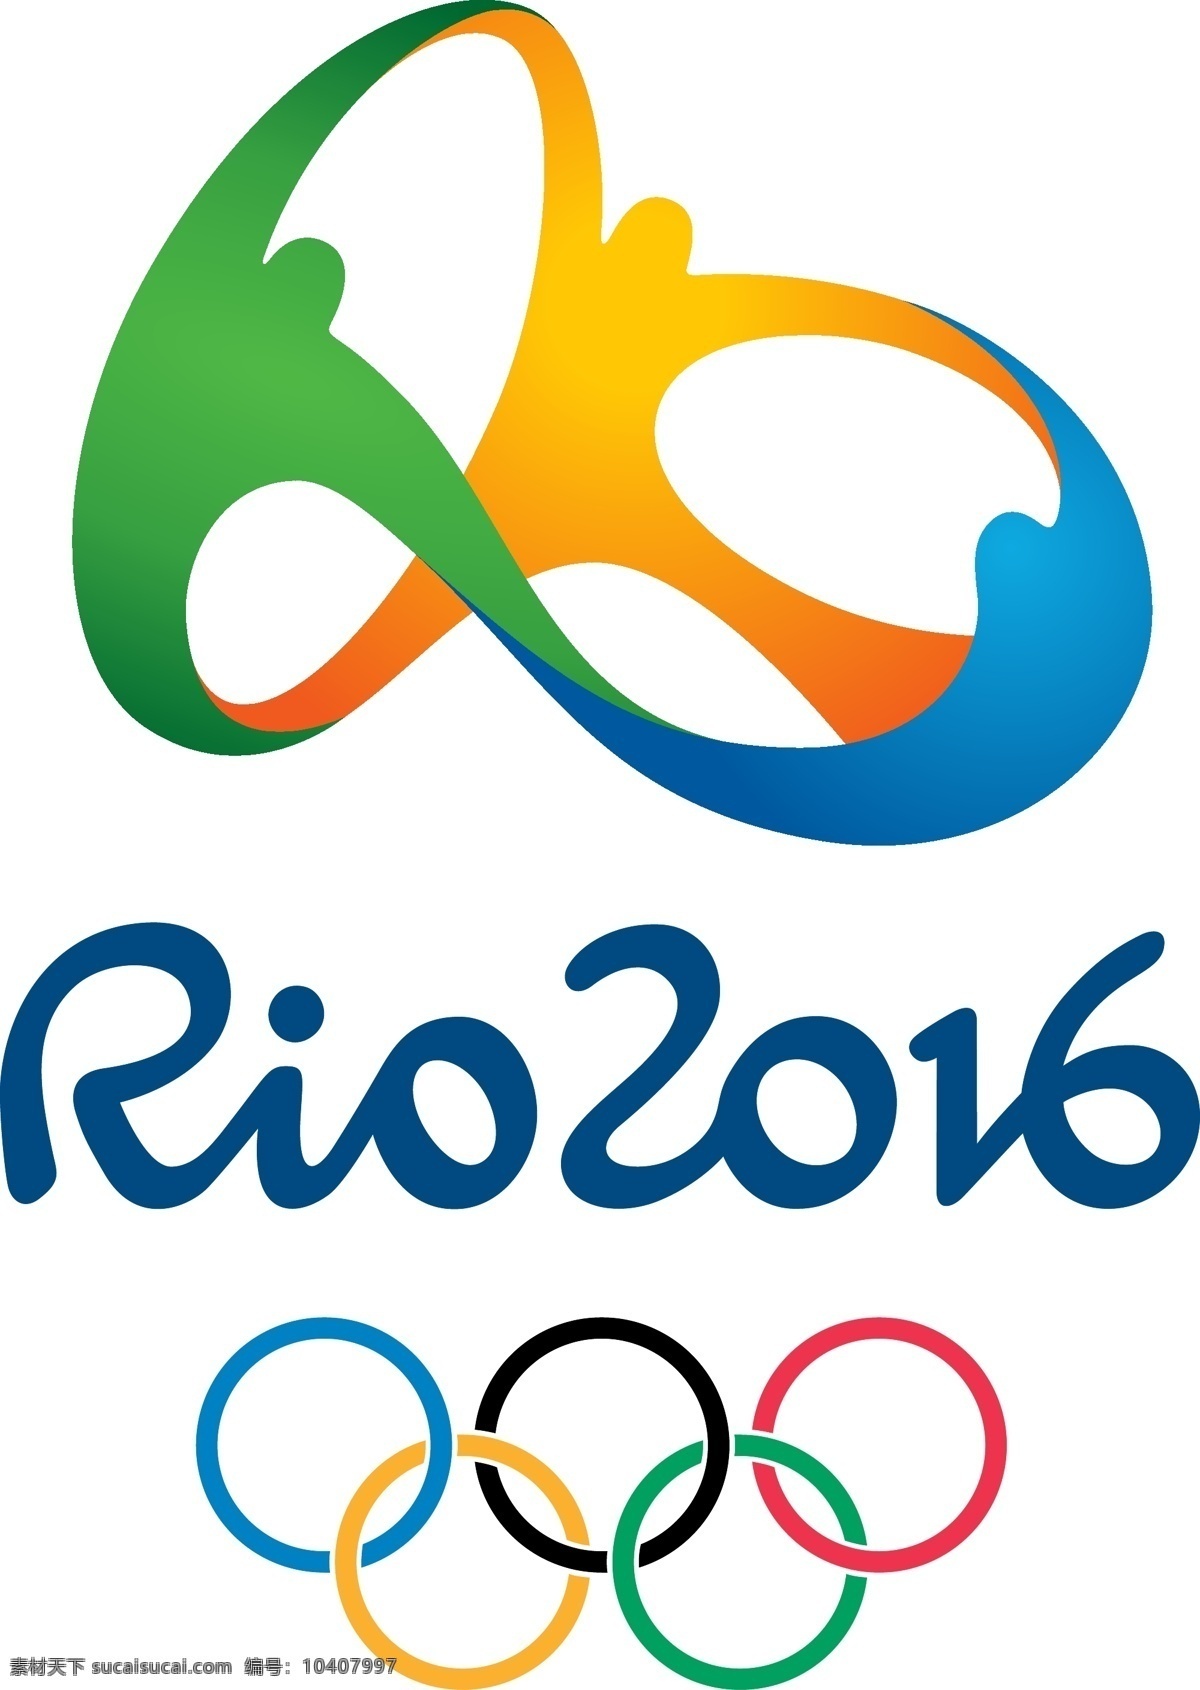 里约热内卢 2016 奥运会 标志 附 申奥 官方 高清 壁纸 宣传片 logo rio wgc314159265 矢量图 其他矢量图